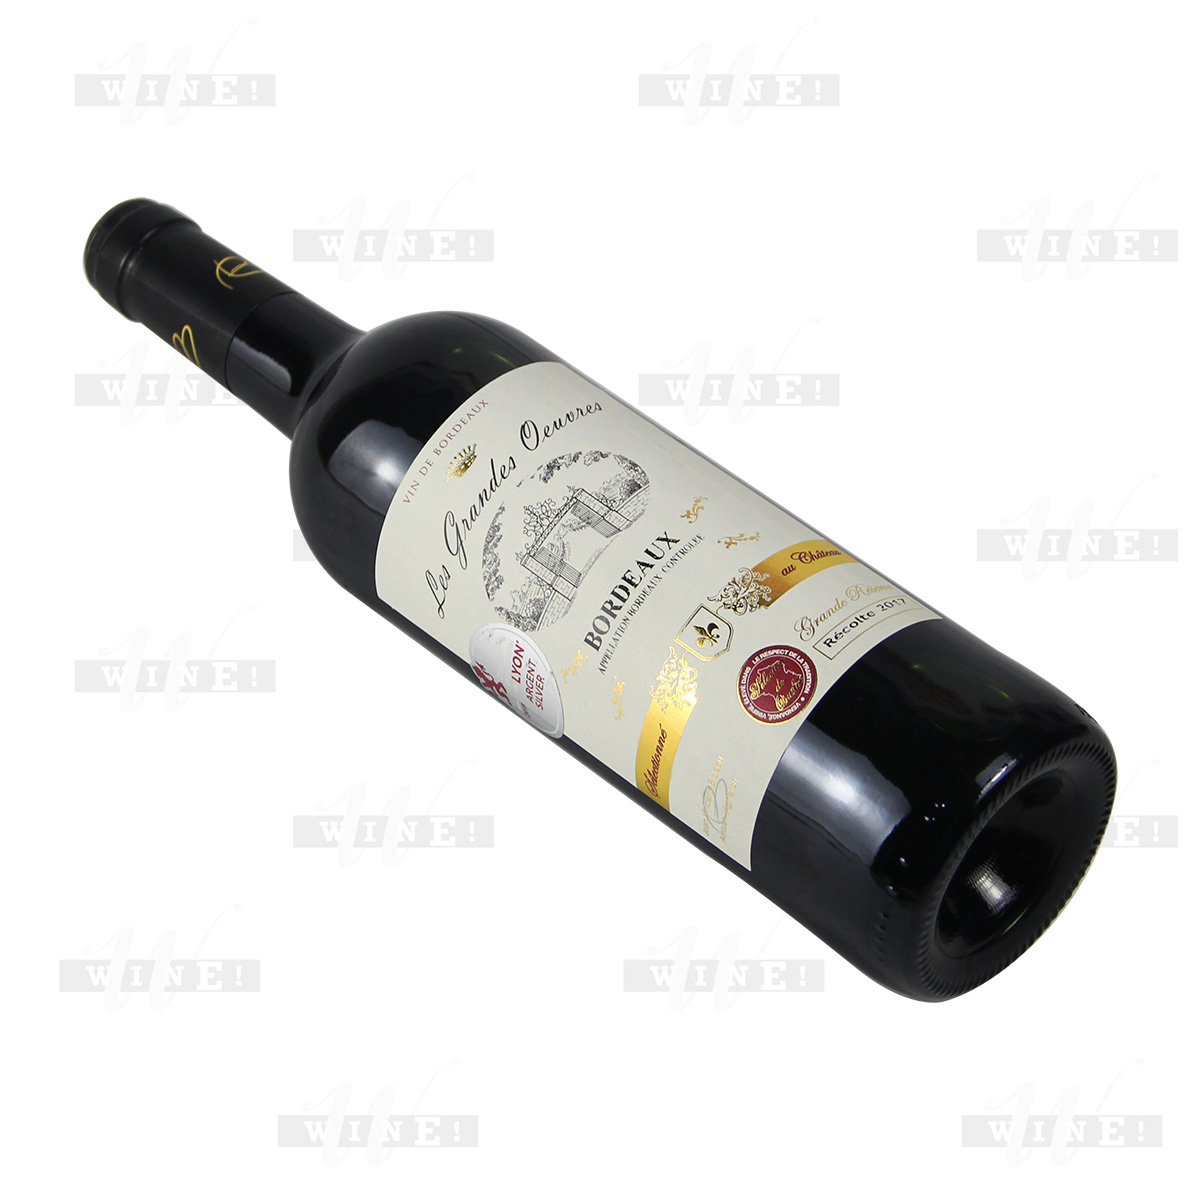 法國波爾多格朗艾弗赤霞珠梅洛干紅葡萄酒